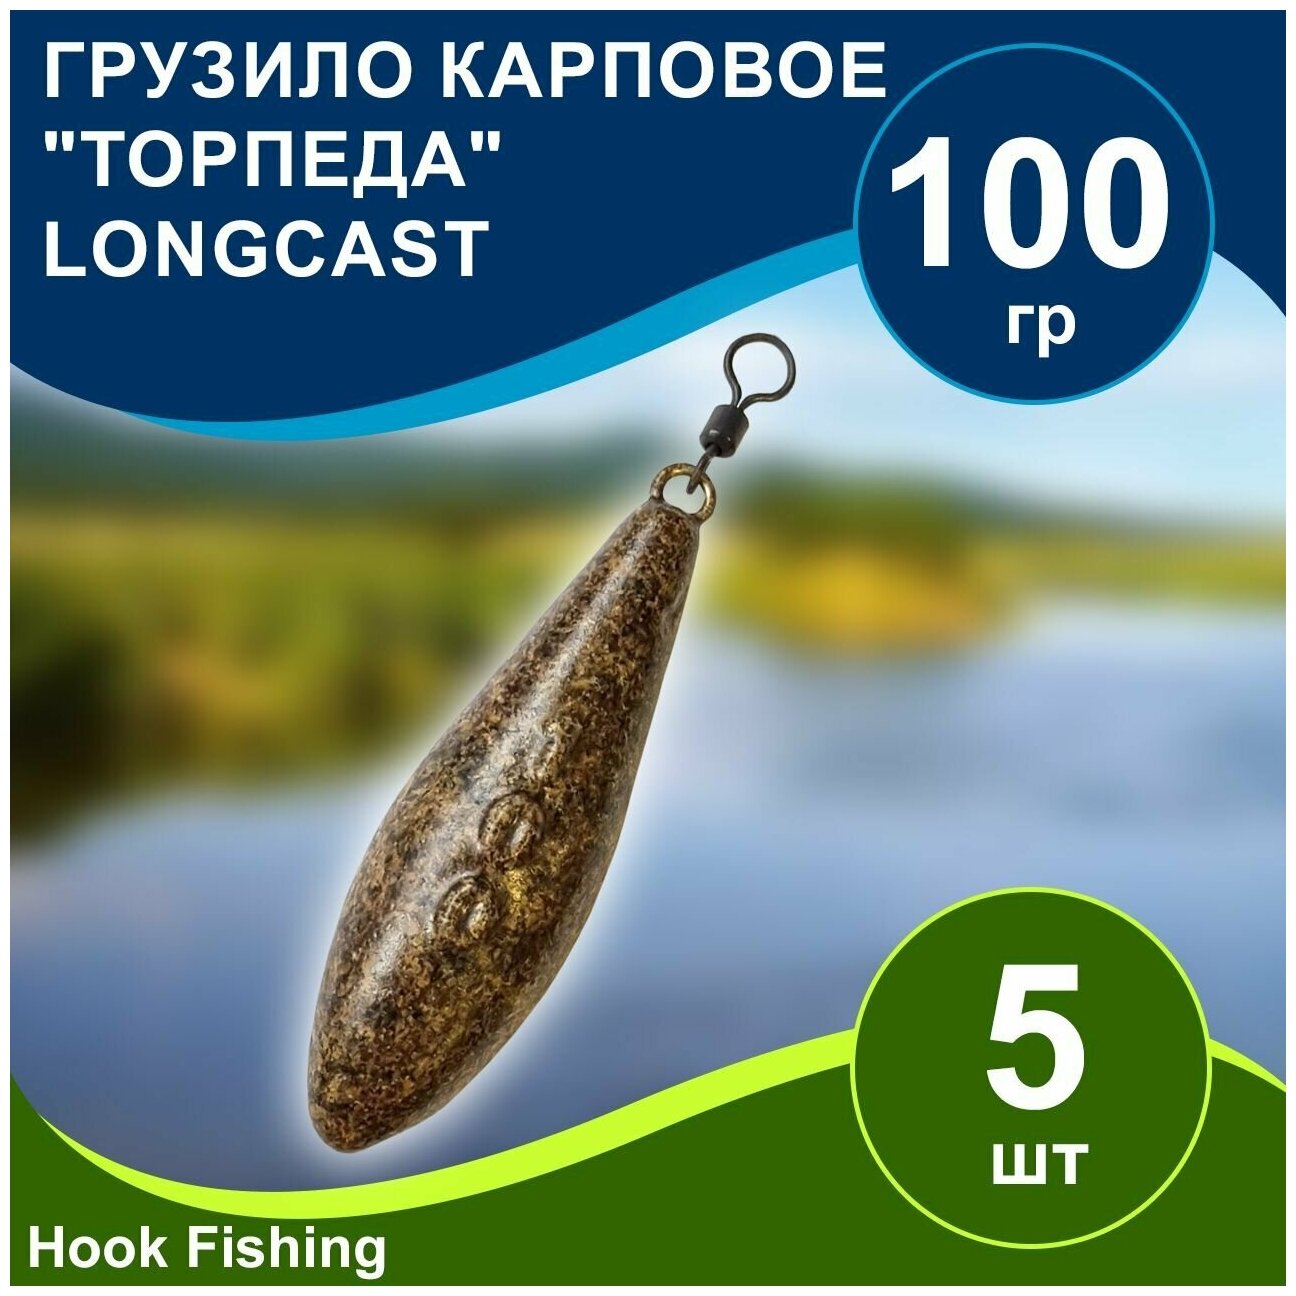 Груз рыболовный карповый "Торпеда/Лонгкаст на вертлюге" 100гр 5шт цвет коричневый, Longcast